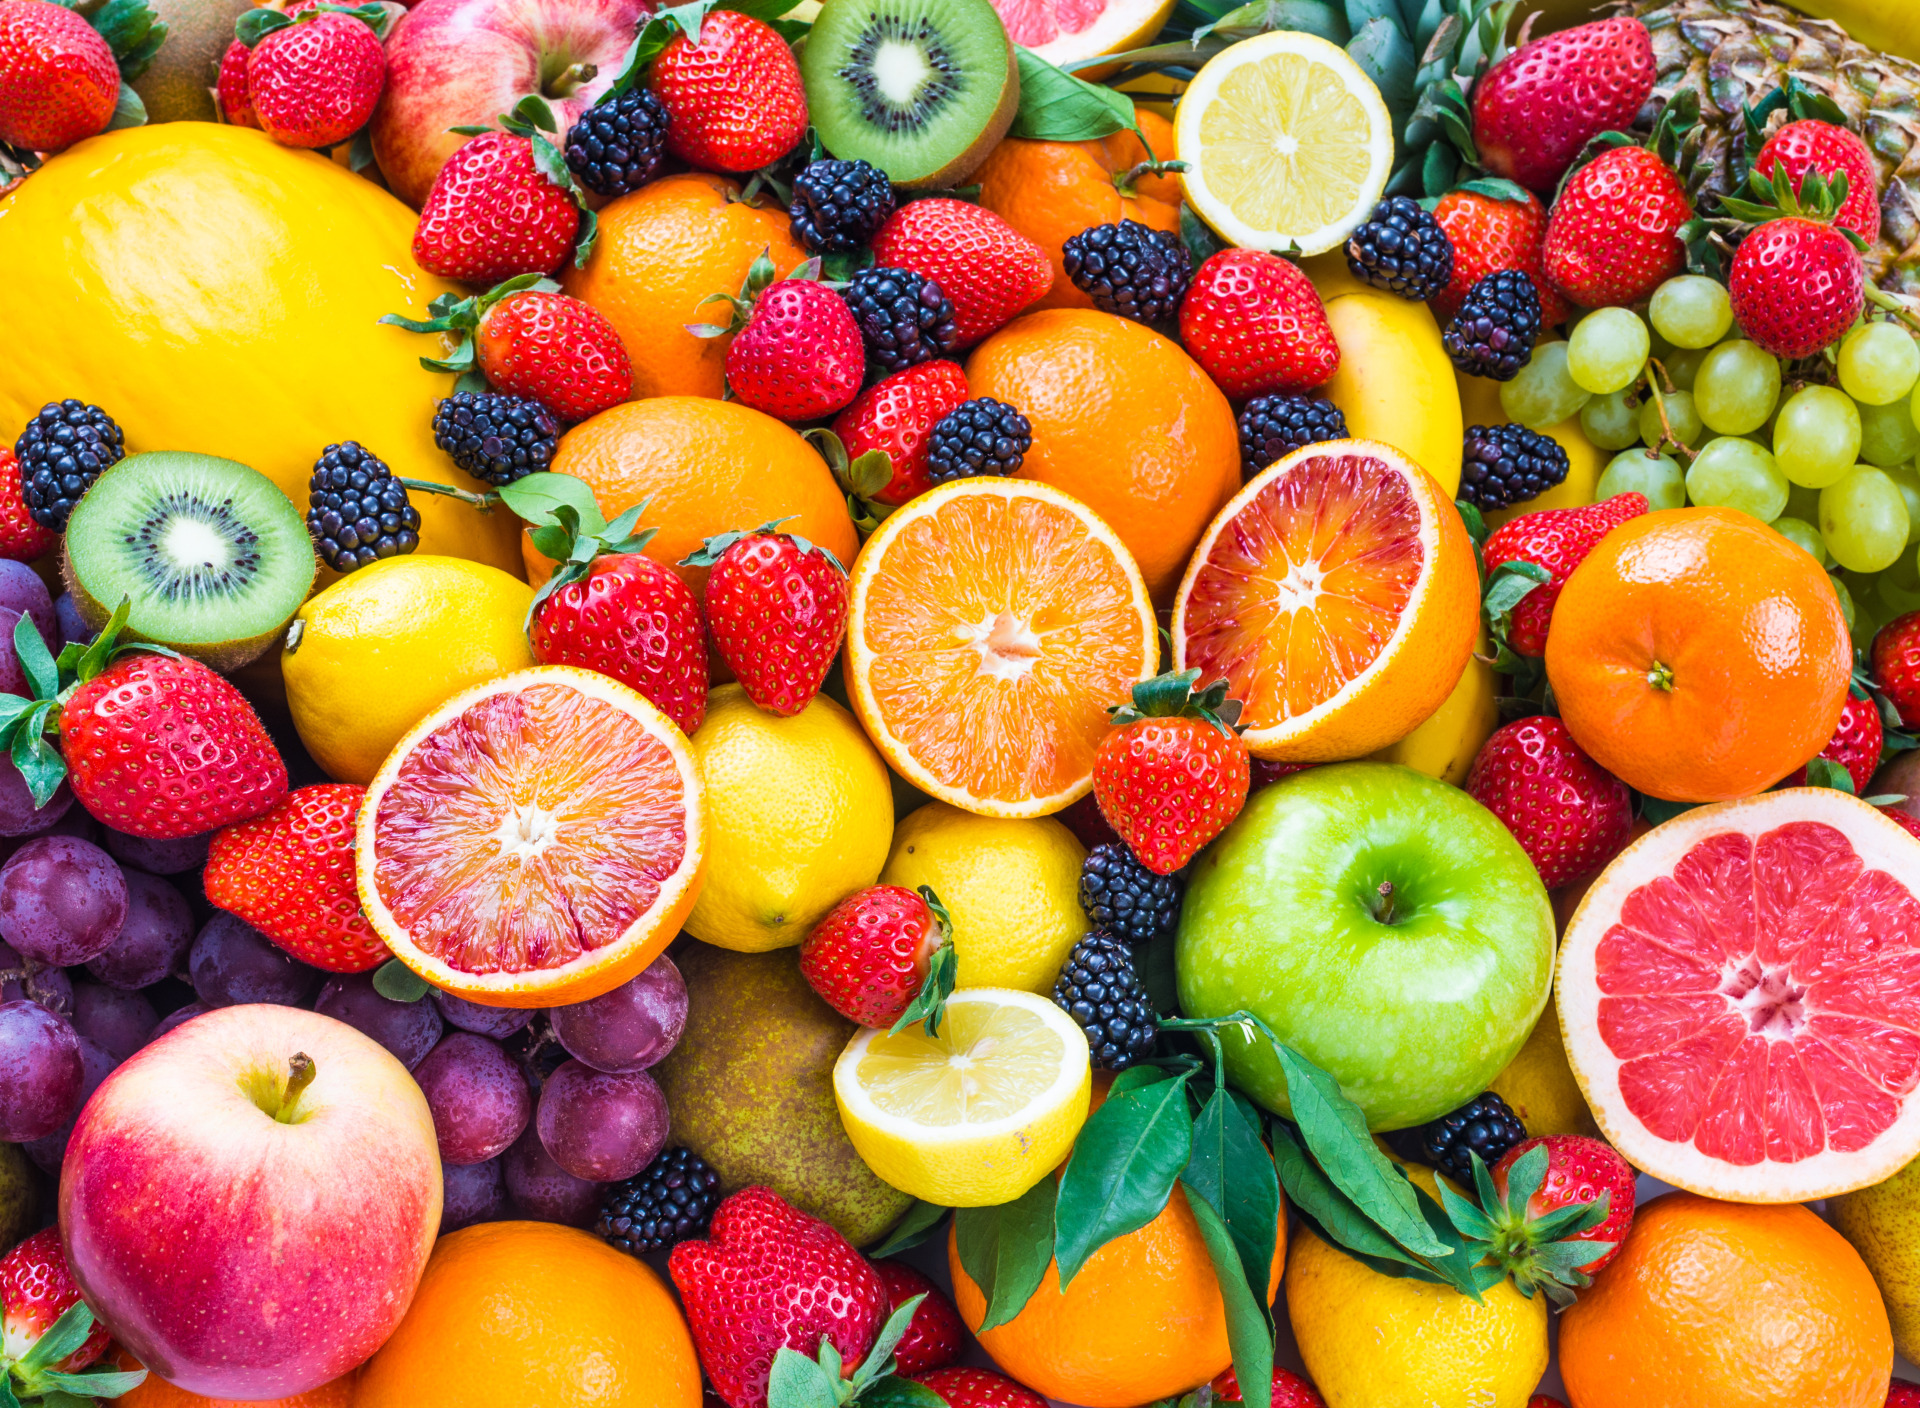 Про фрукты и ягоды. Фрукты. Овощи, фрукты, ягоды. Фрукты фон. Фон с фруктами и ягодами.